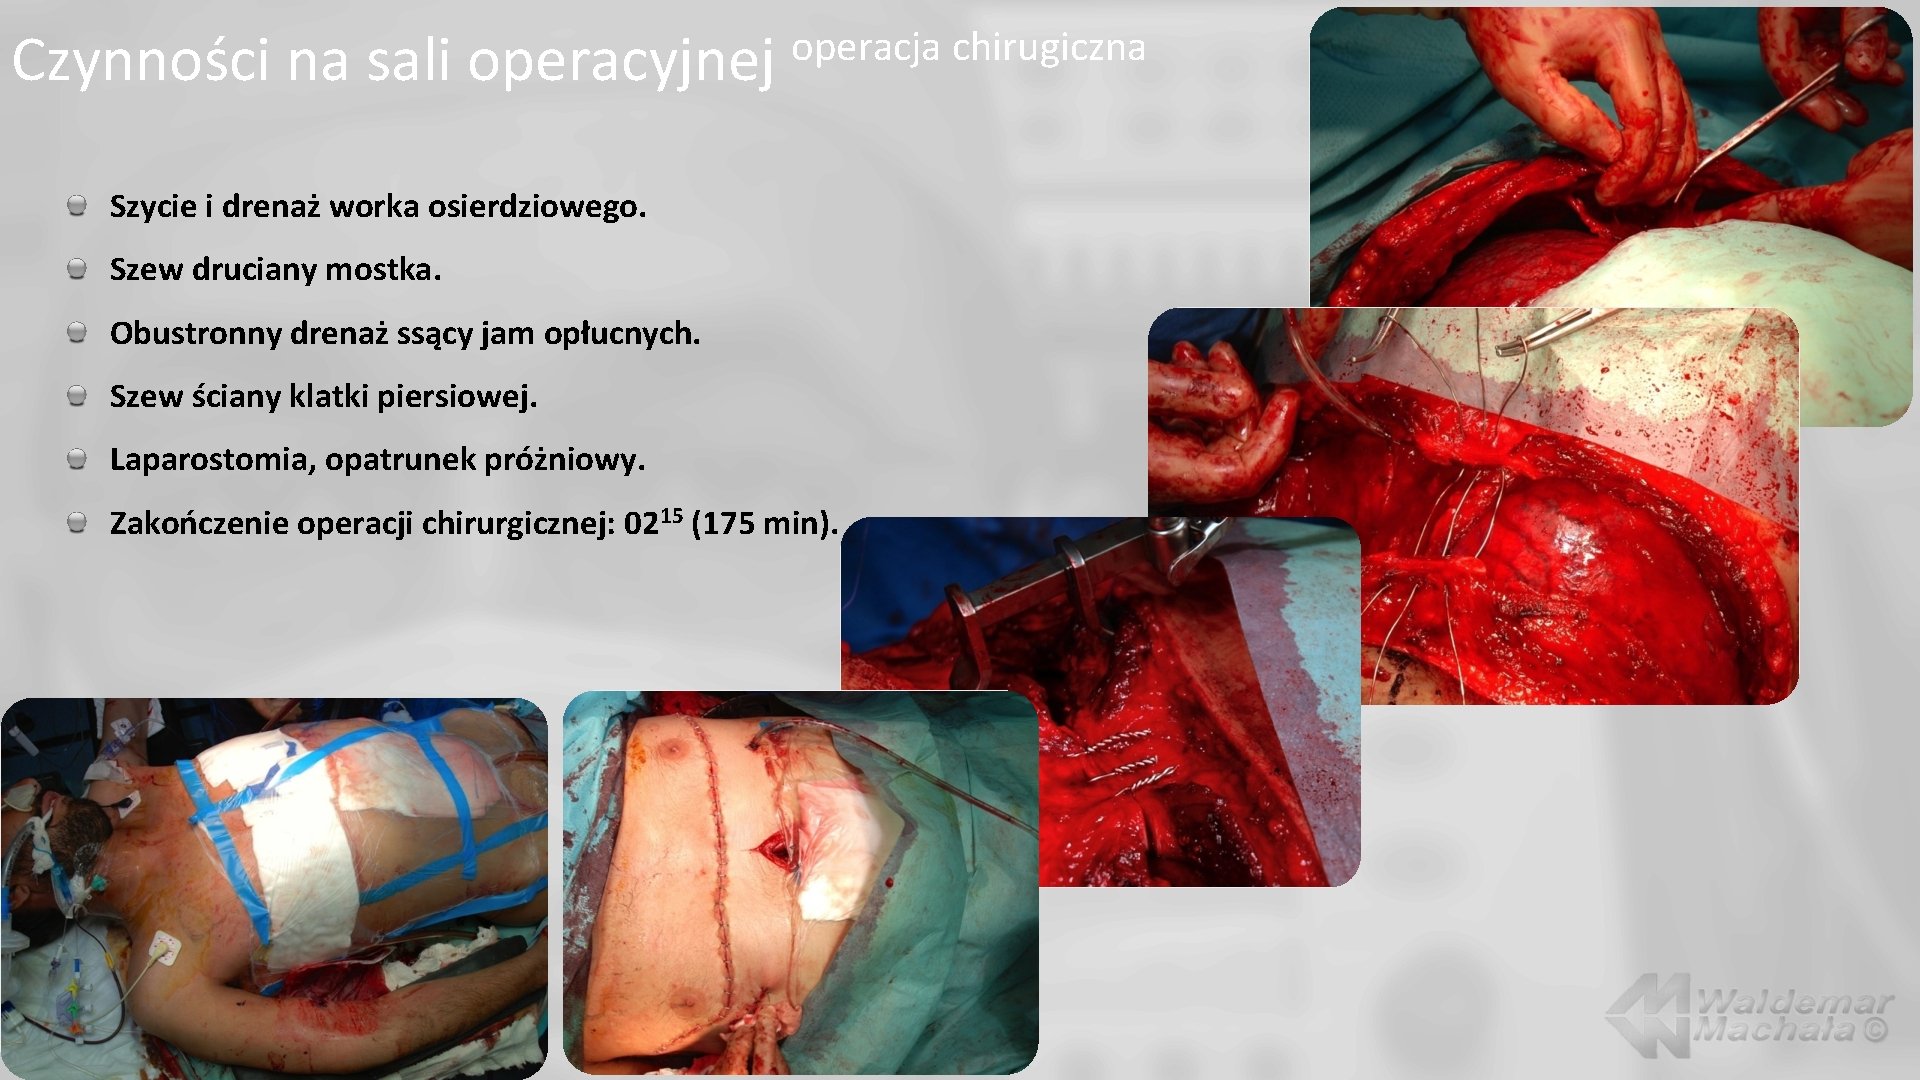 Czynności na sali operacyjnej operacja chirugiczna Szycie i drenaż worka osierdziowego. Szew druciany mostka.